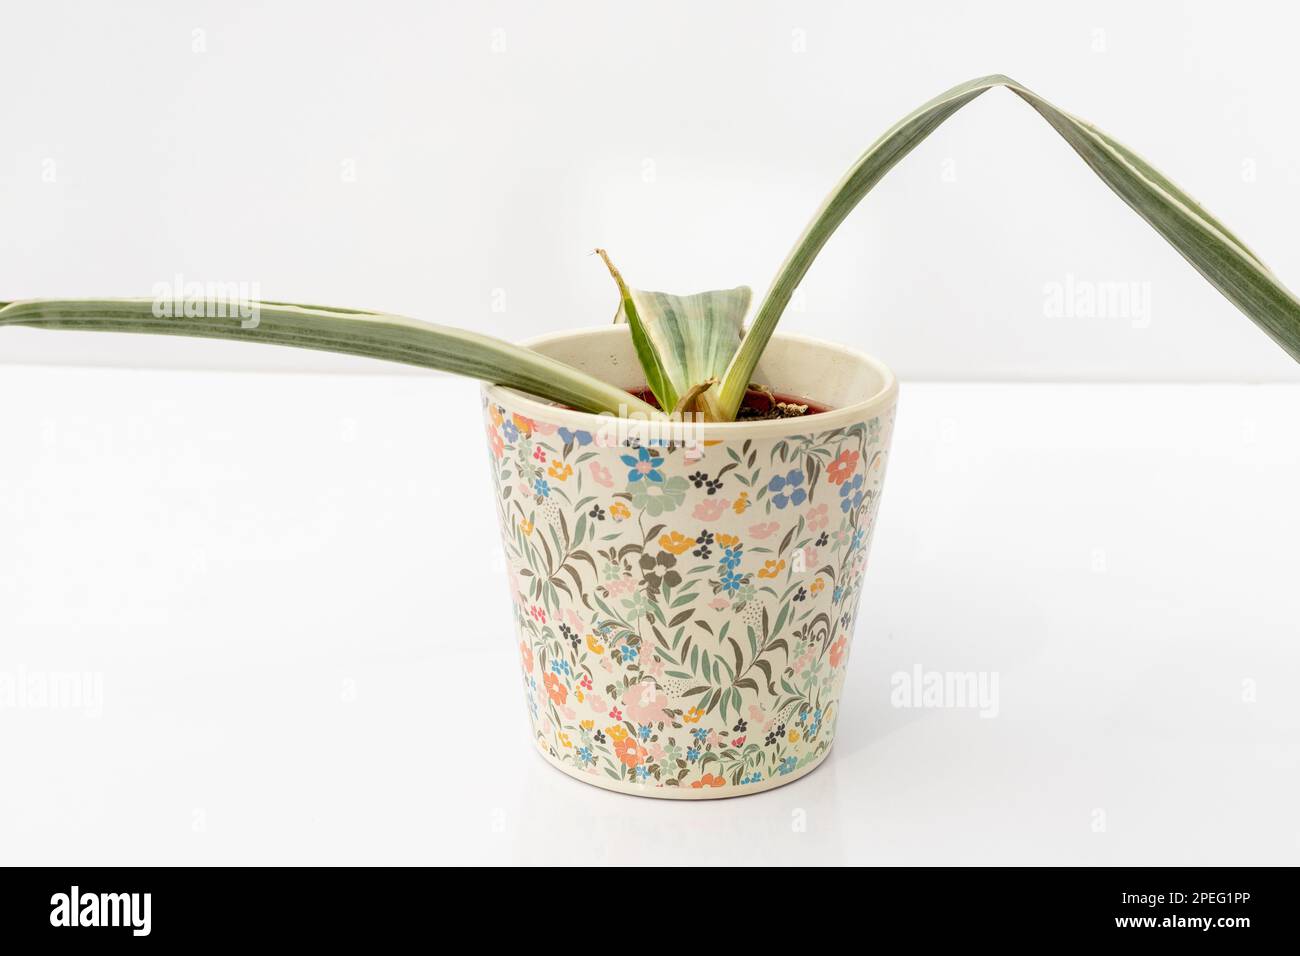 Sansevieria-Weiße Schlangenpflanze, Wurzelfäule in einem Keramiktopf, isoliert auf weißem Hintergrund Stockfoto